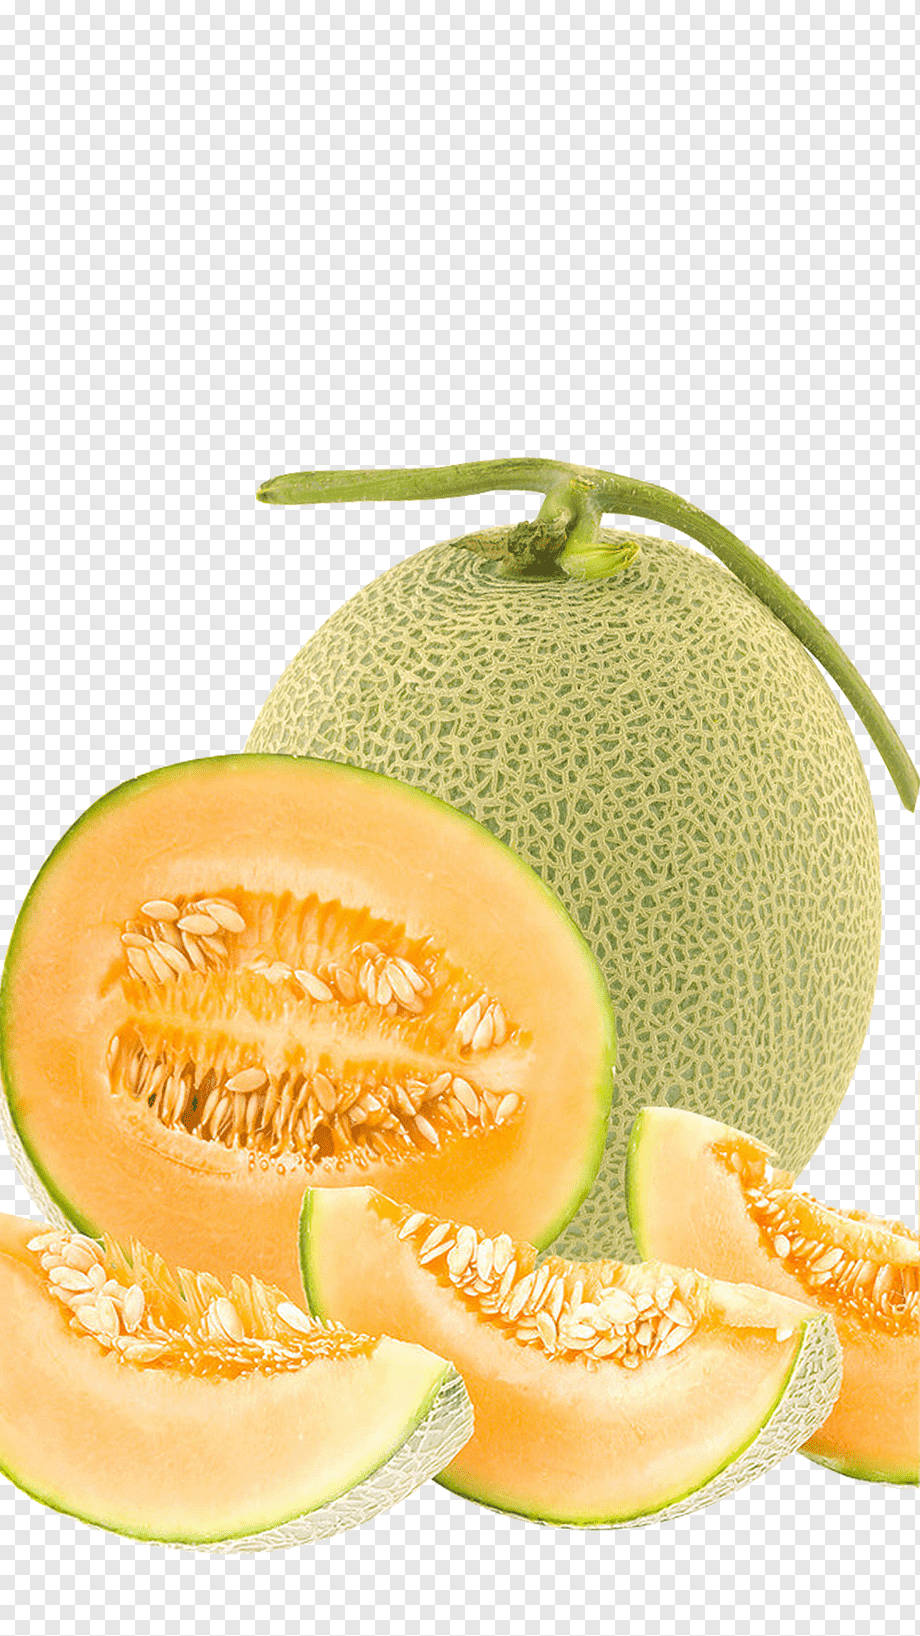 Honeydew Melon Poster Wallpaper